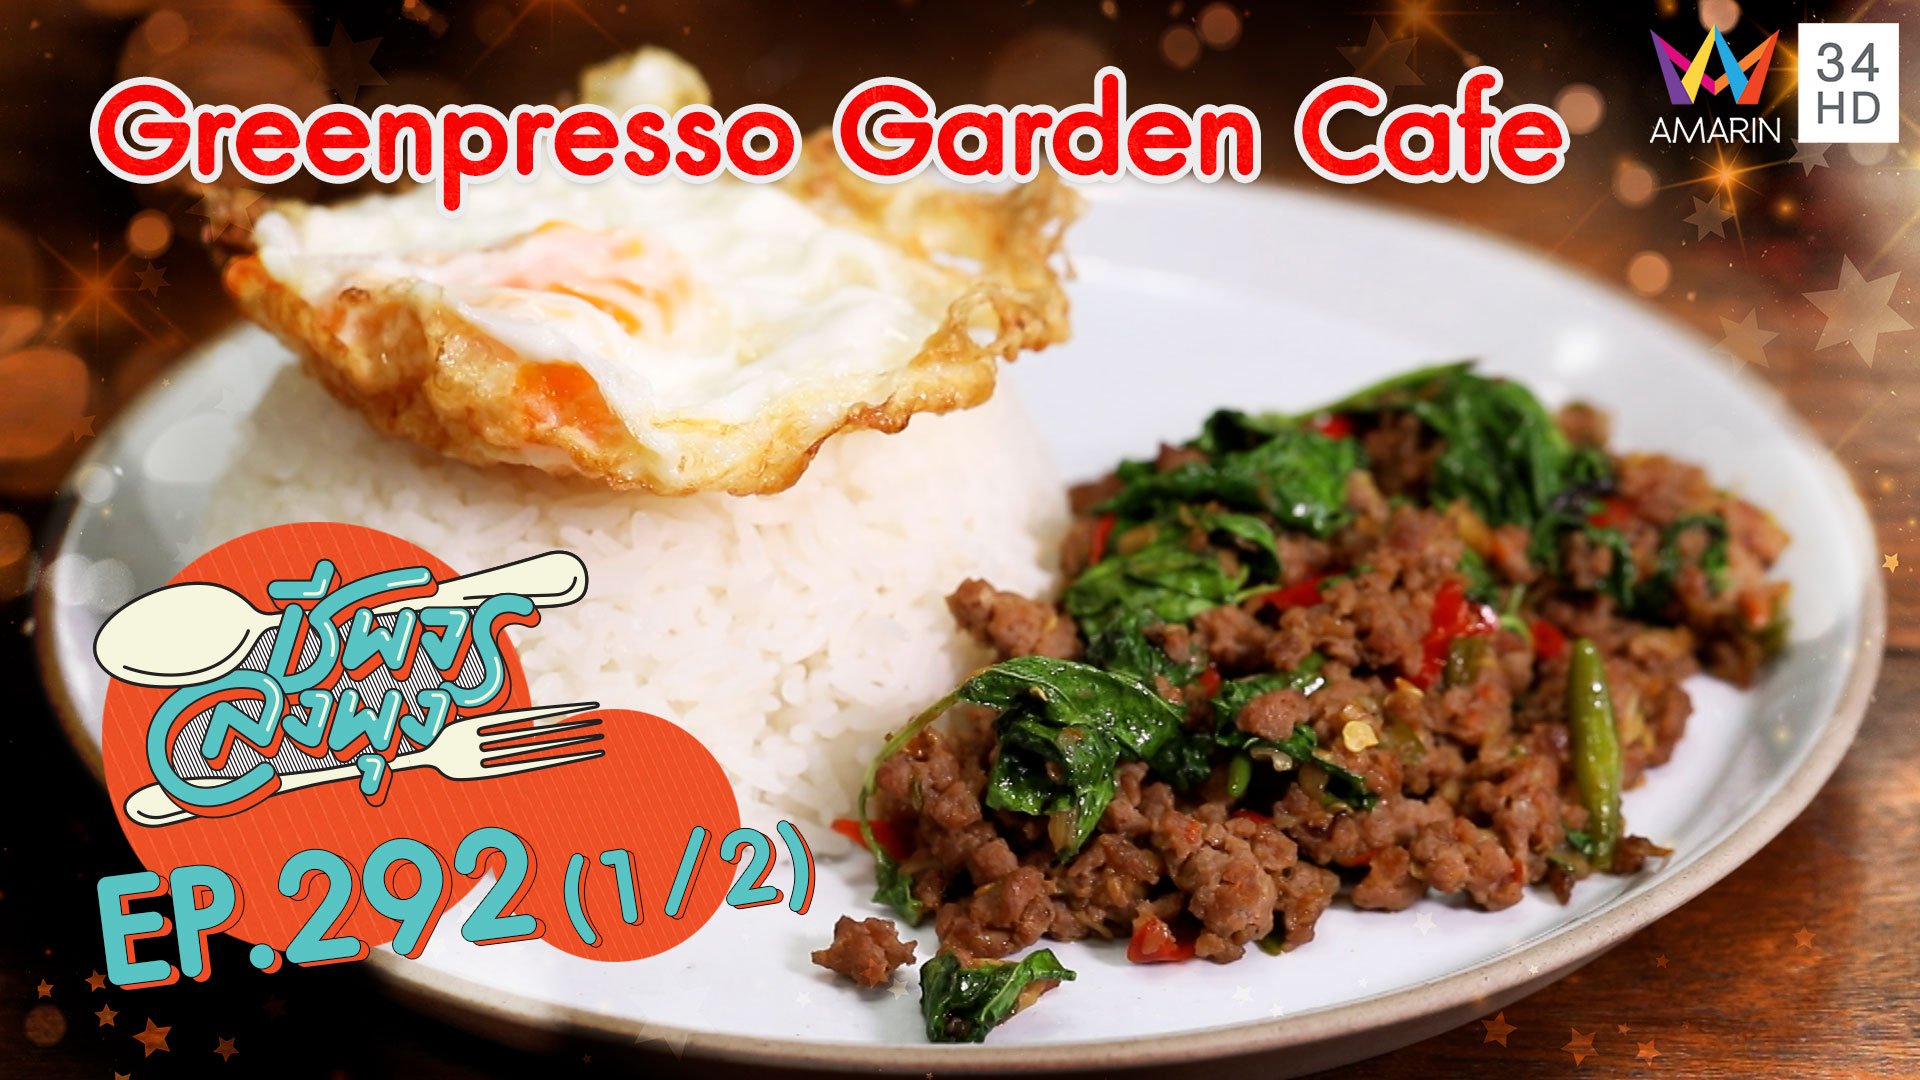 นั่งชิลคาเฟ่สีเขียวอาหารอร่อย @ ร้าน Greenpresso Garden Cafe | ชีพจรลงพุง | 10 เม.ย. 64 (1/2) | AMARIN TVHD34